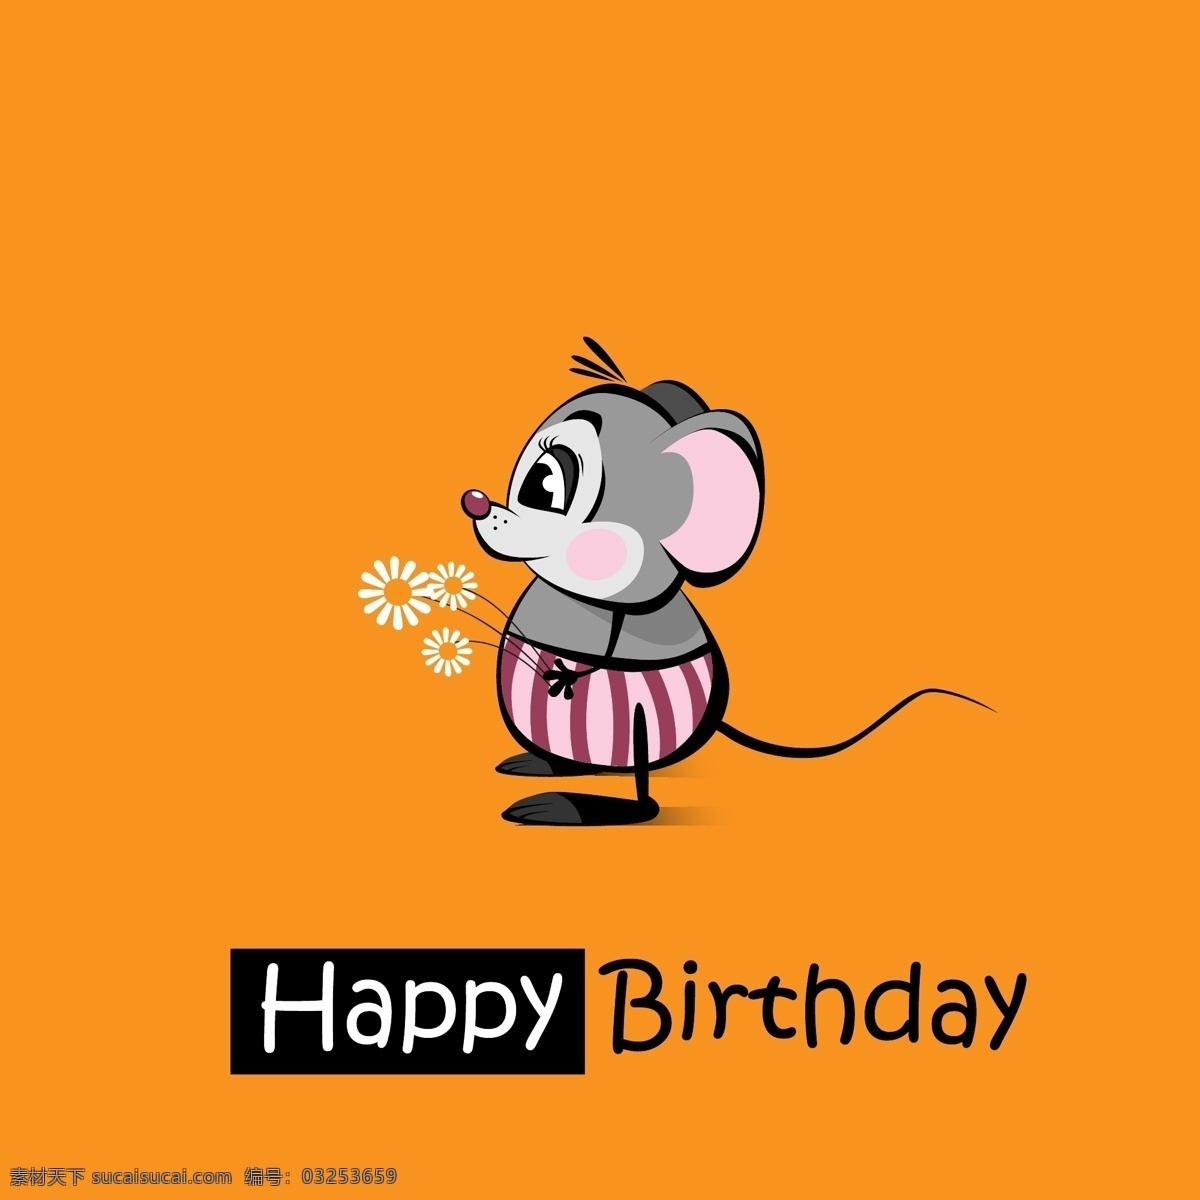 生日贺卡漫画 卡通老鼠 卡通动物漫画 卡通动物插画 矢量动物 生日快乐 底纹边框 矢量素材 橙色